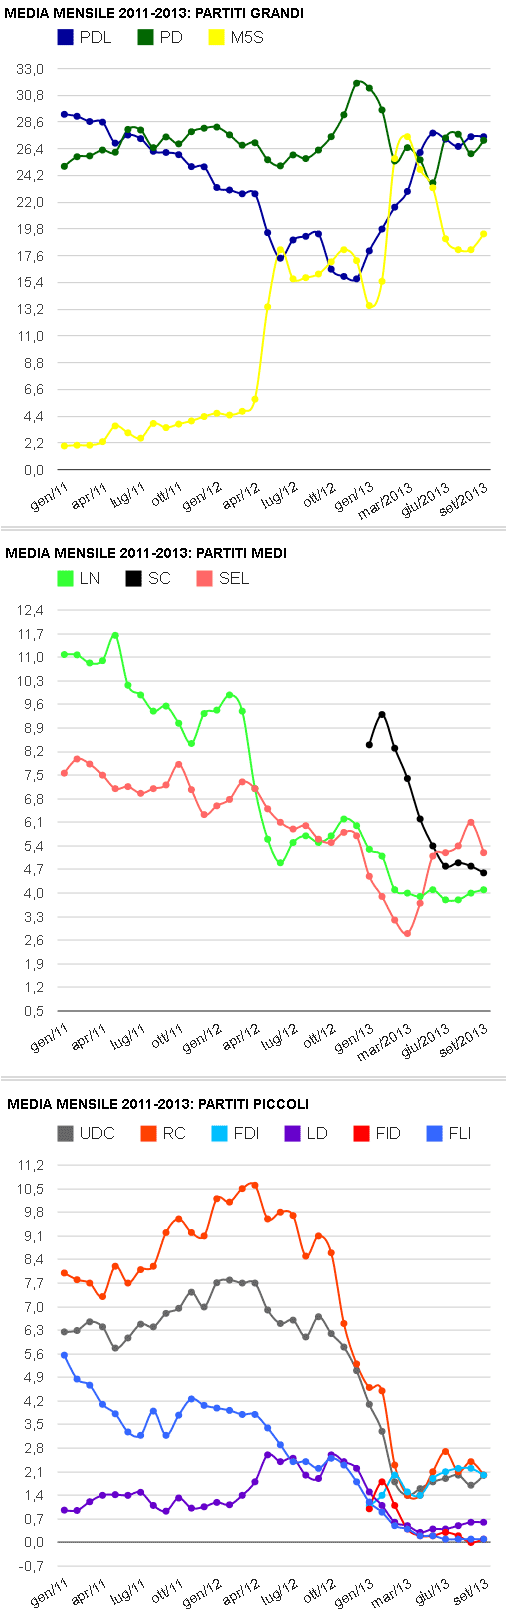 media mensile sondaggi gen/2011 - sett/2013